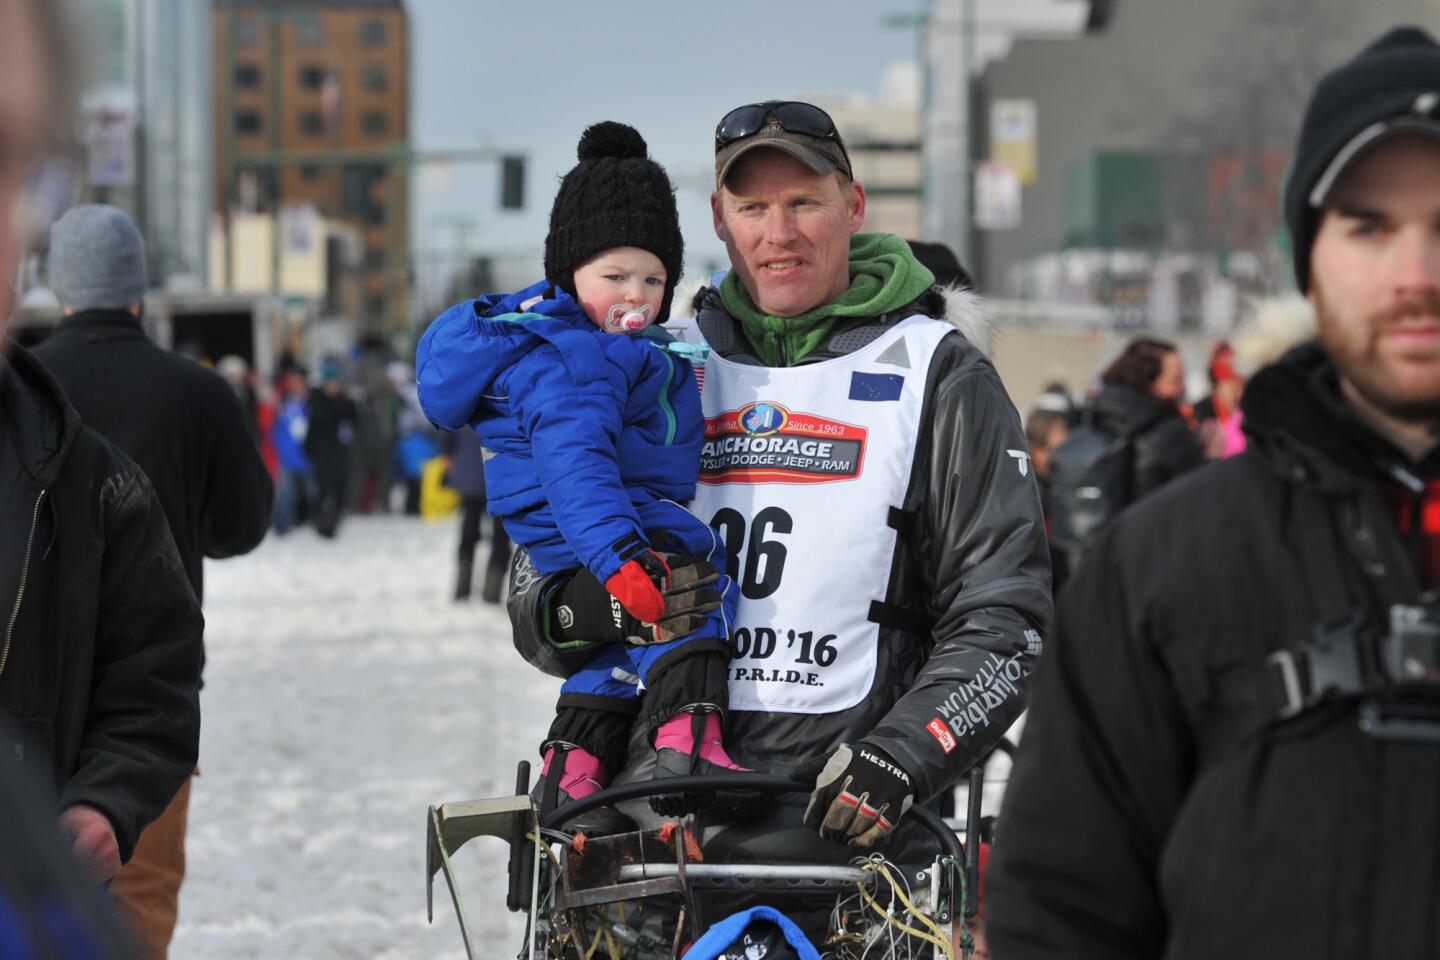 Iditarod dog-sled race